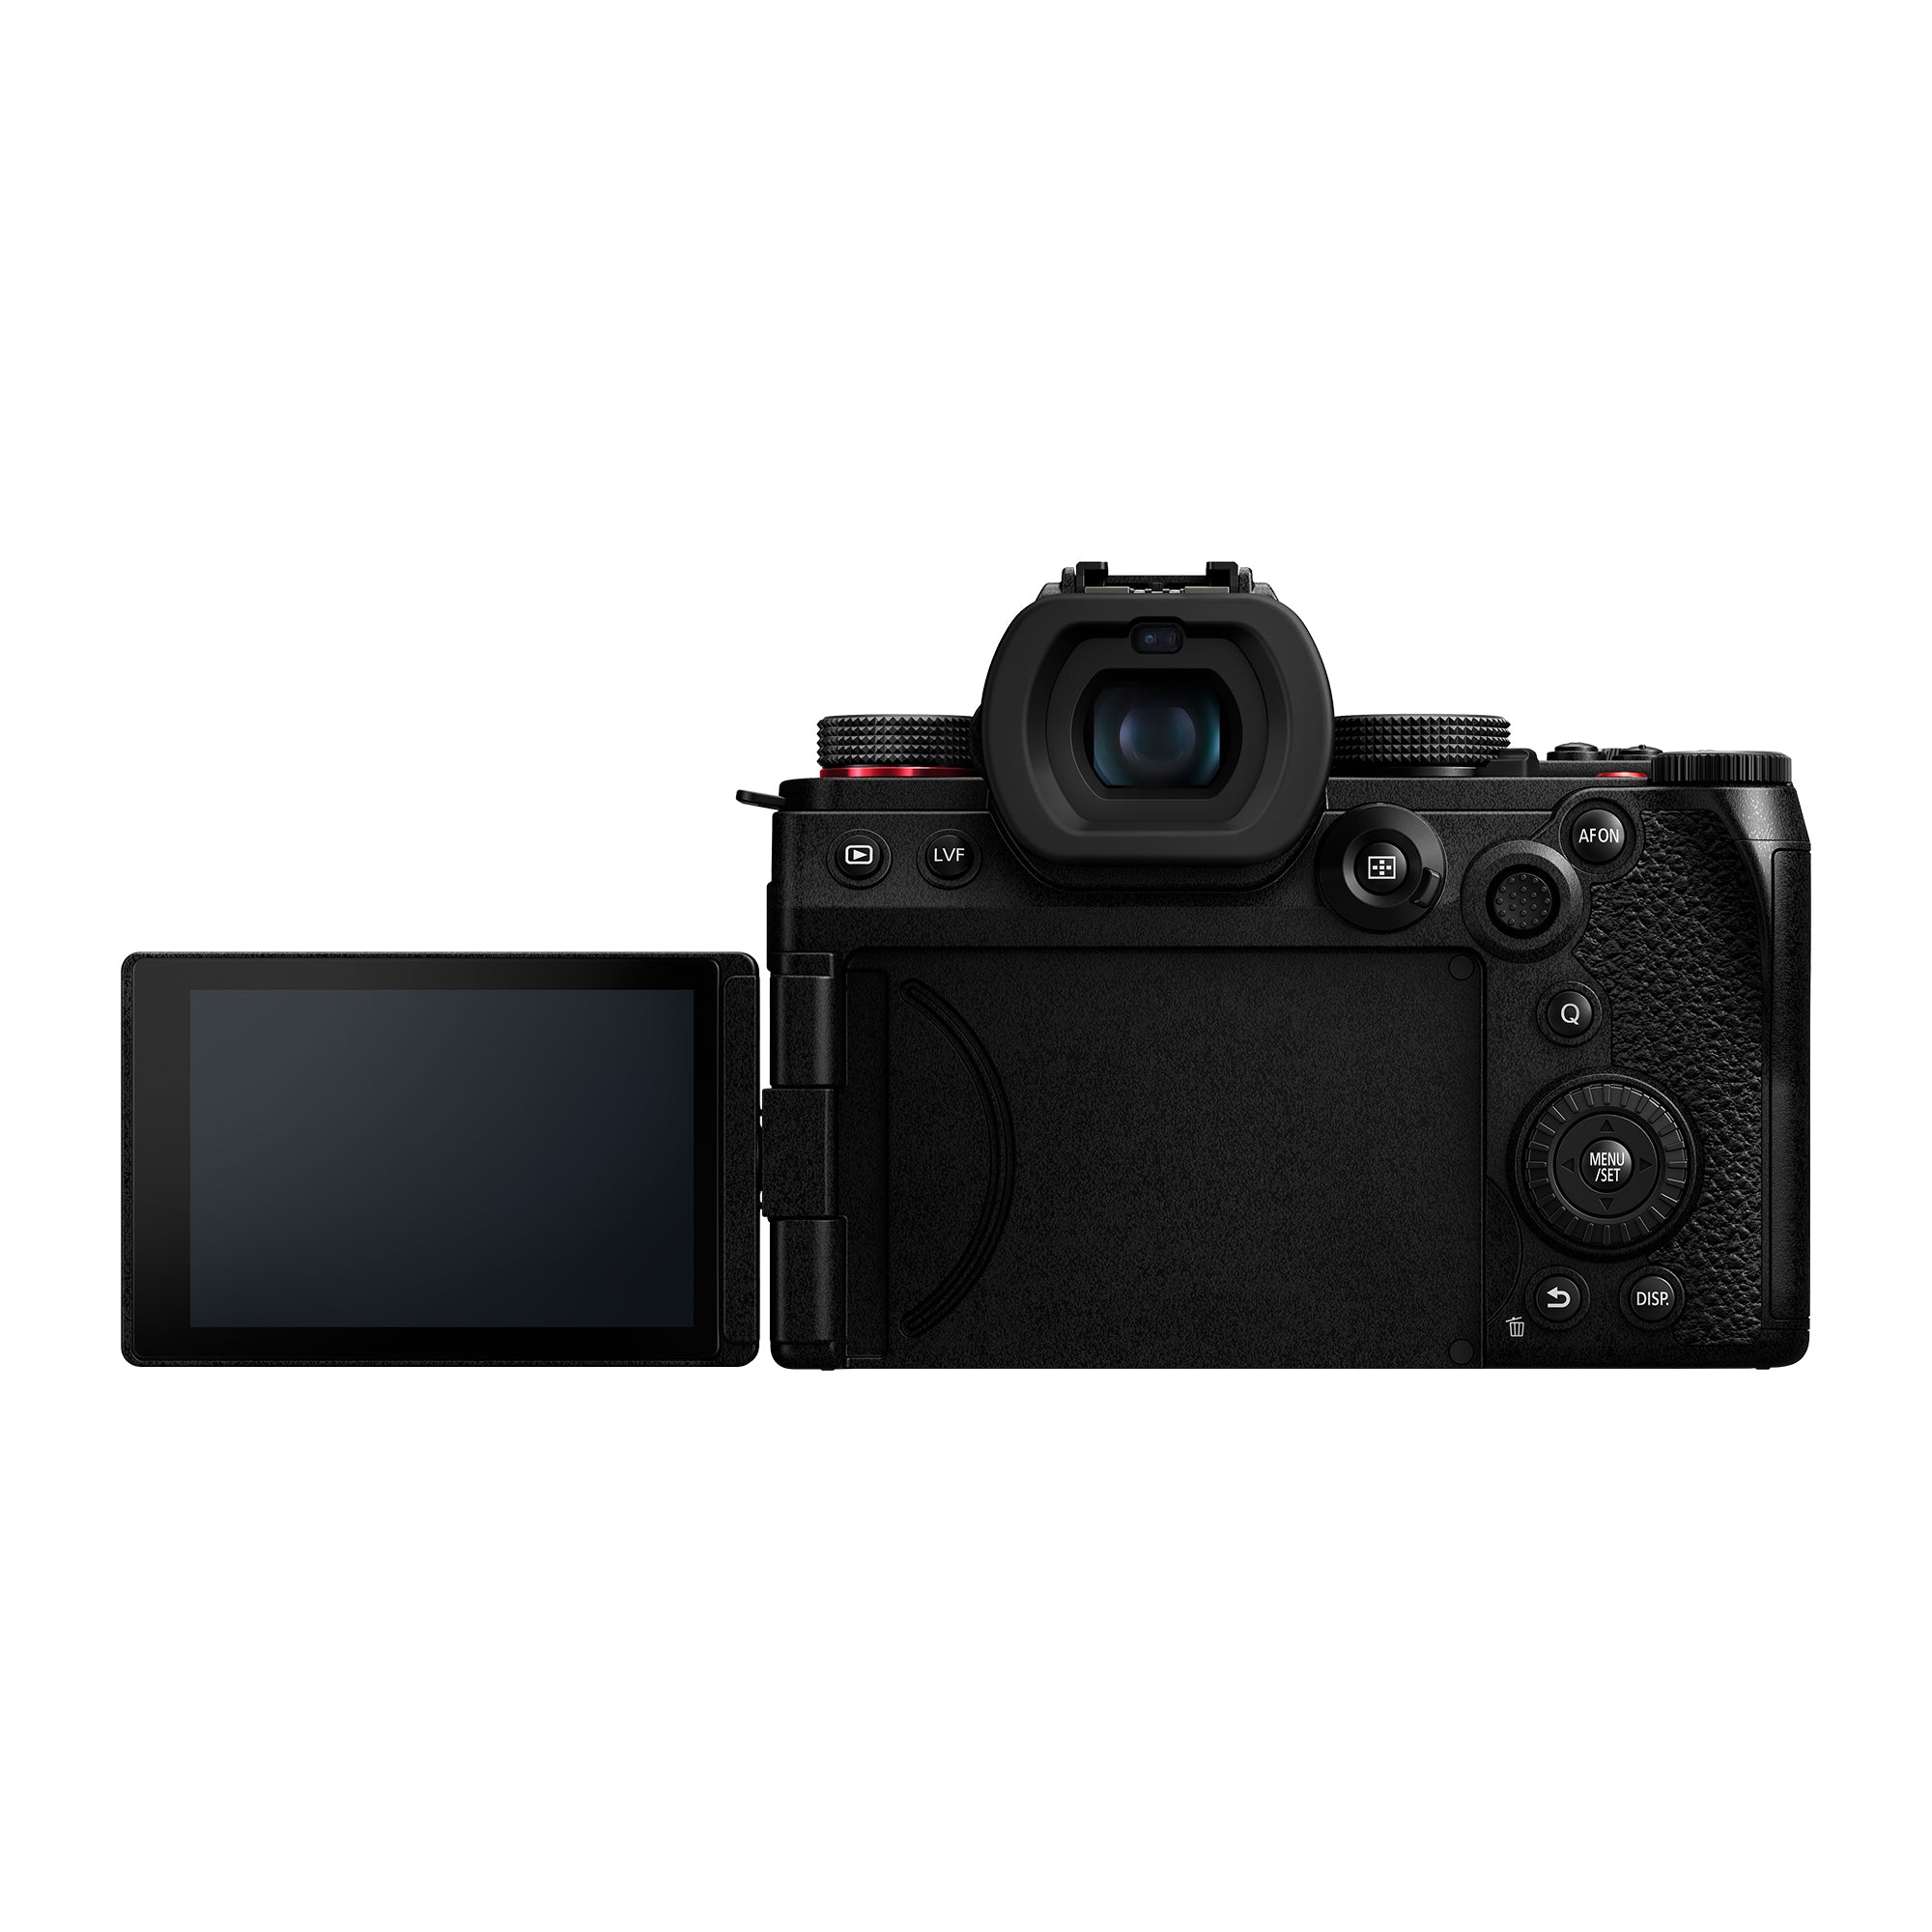 Panasonic LUMIX G9M2 Mirrorless Camera Body Only - DC-G9M2P-K